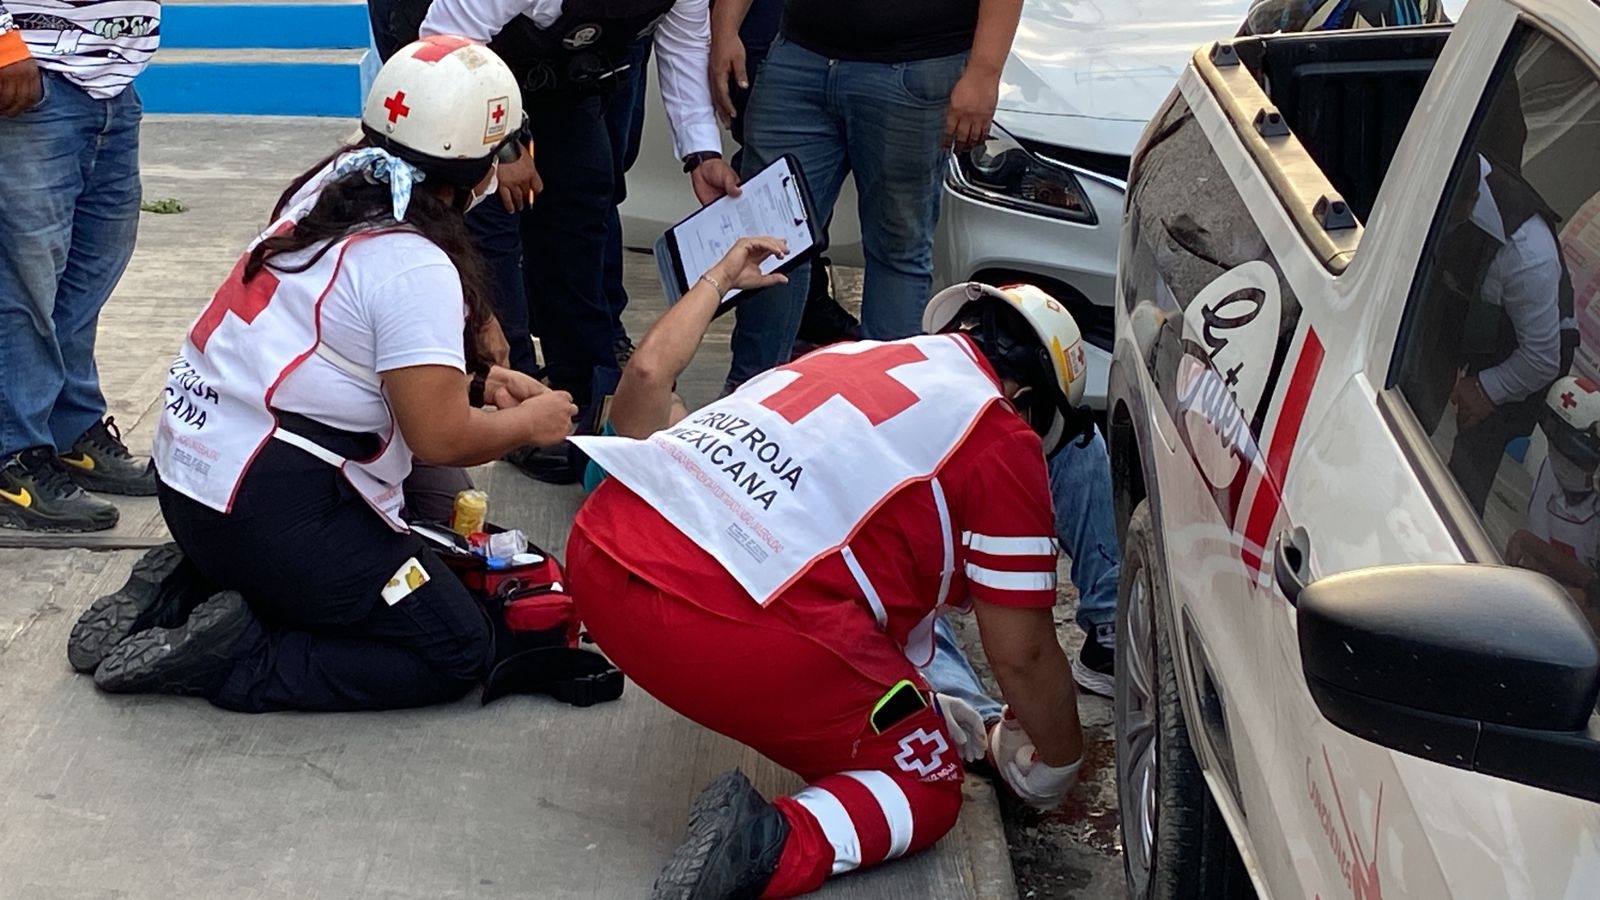 Motociclista recibe portazo de un automóvil y resulta lesionado en Campeche: VIDEO